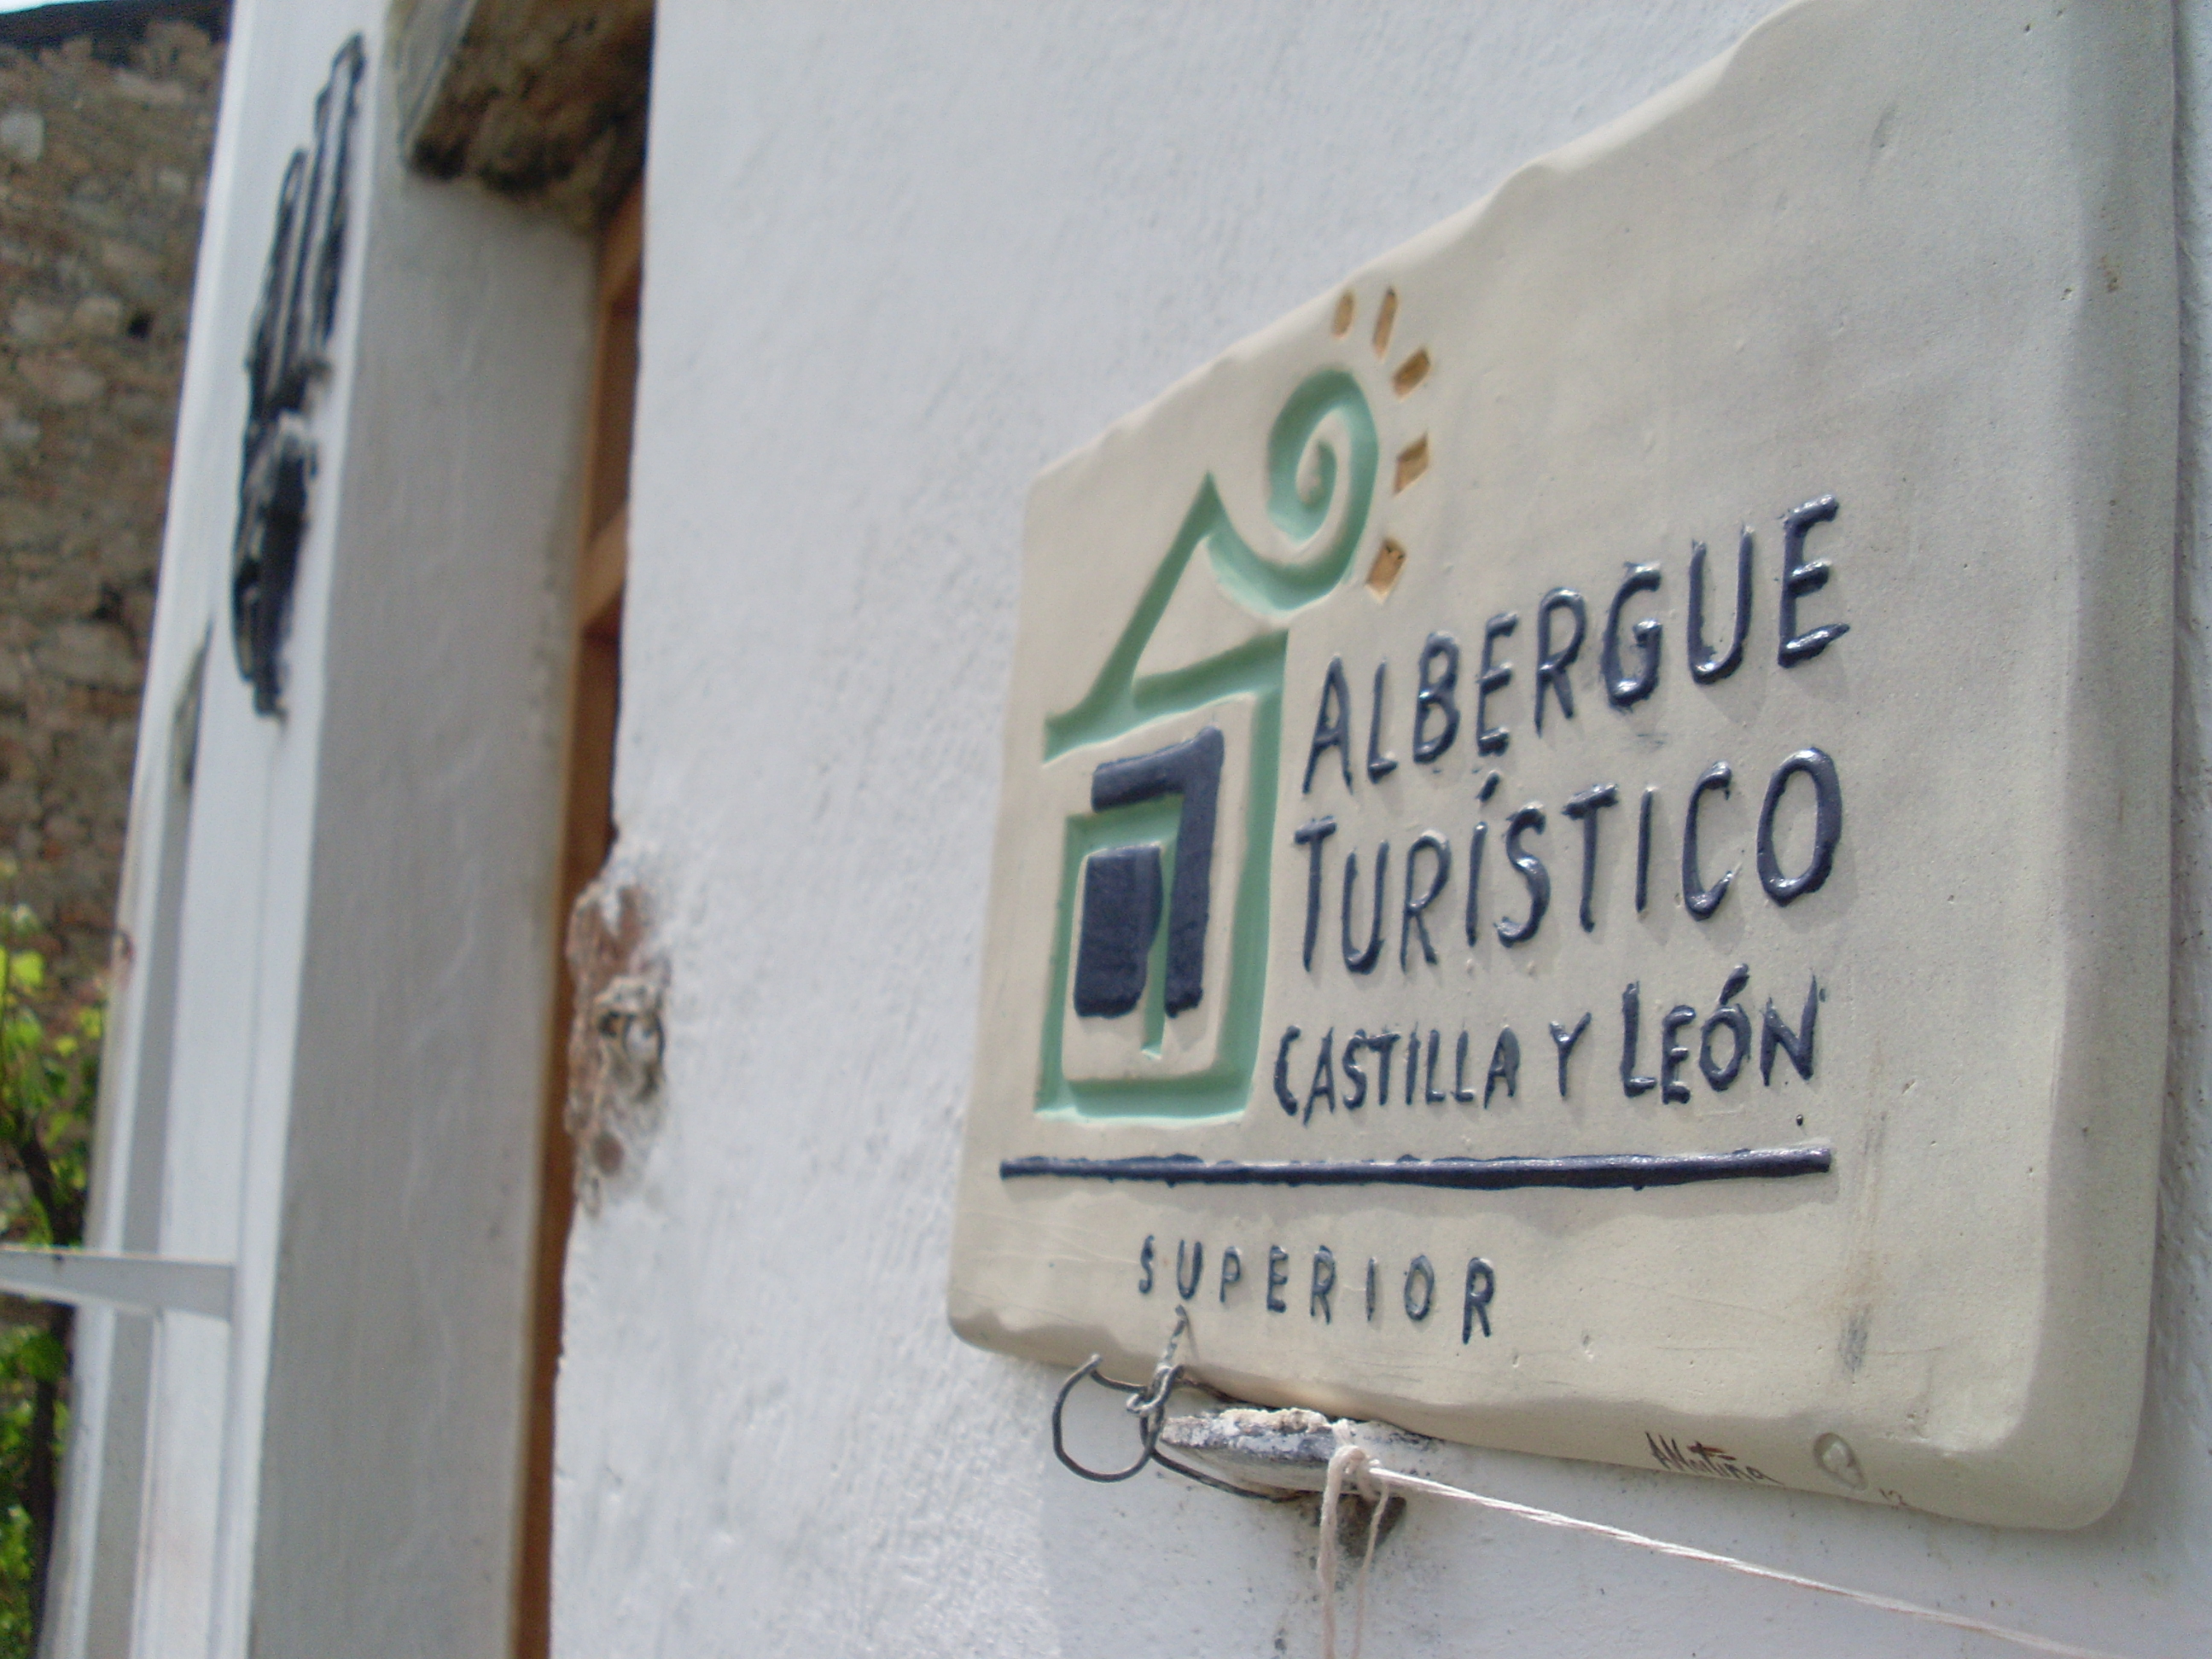 Albergue Turístico de Castilla y León.